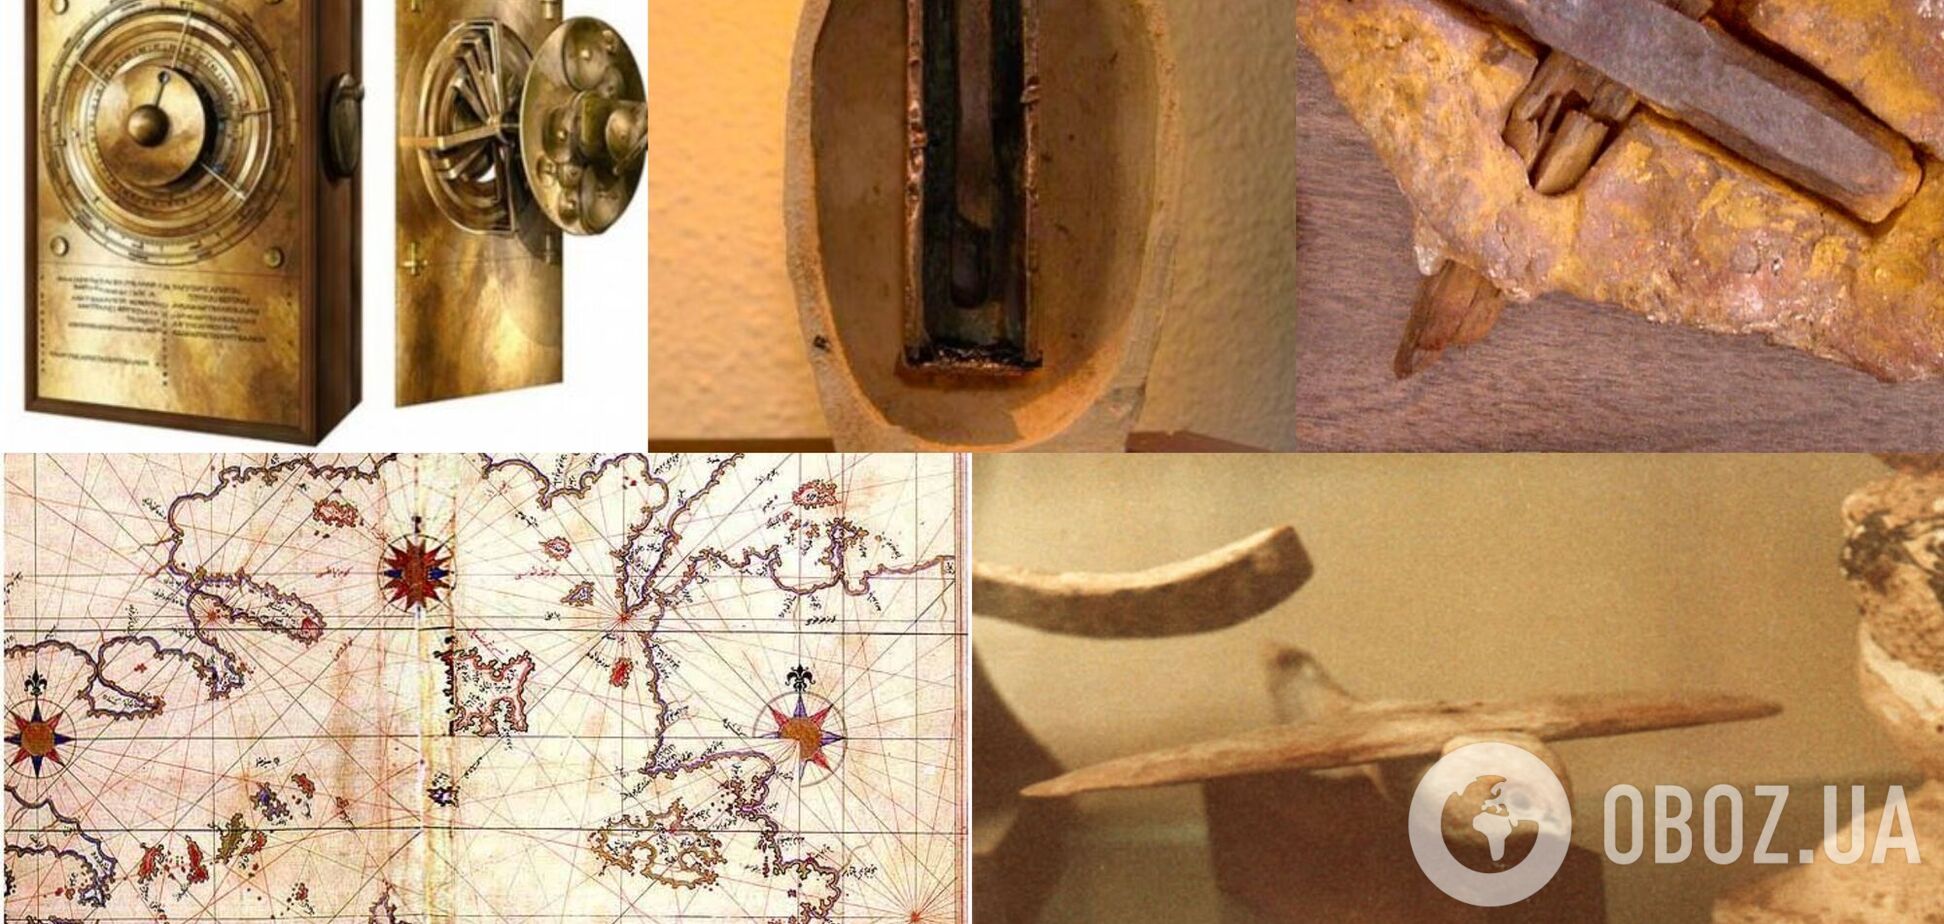 П’ять археологічних артефактів, таємниці яких навряд чи хтось колись розгадає